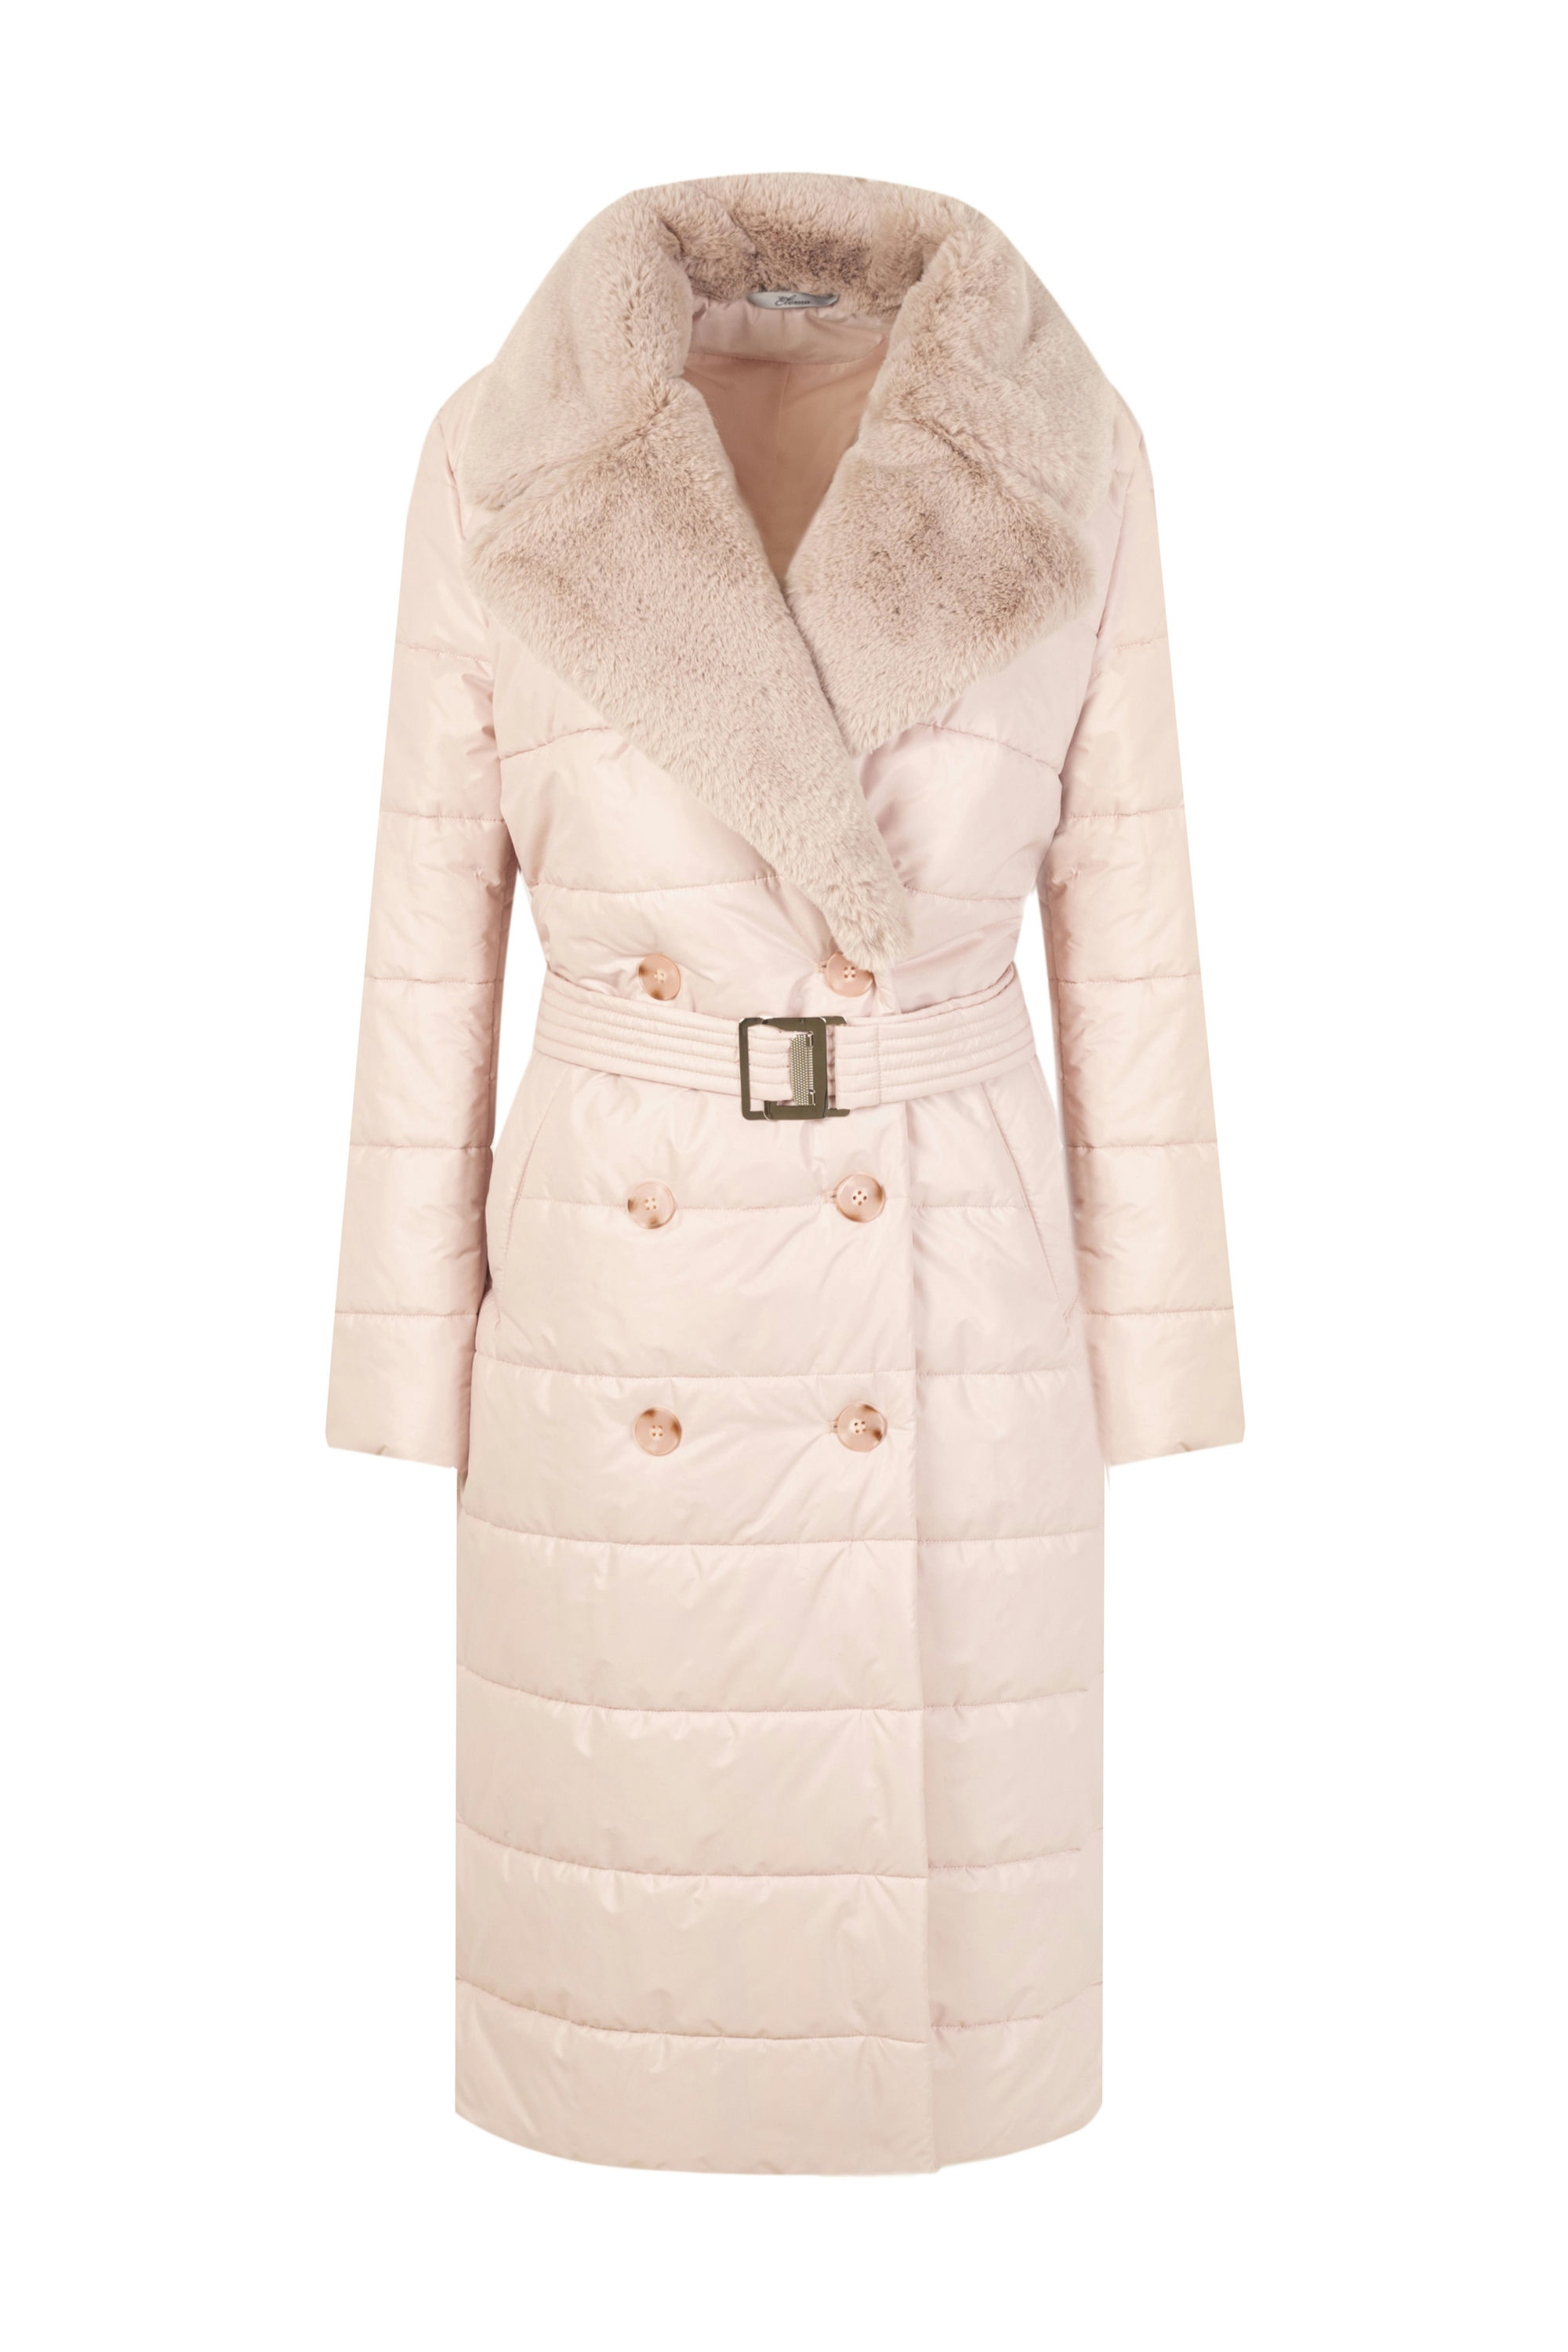 Пальто женское плащевое утепленное 5S-13038-1. Фото 1.